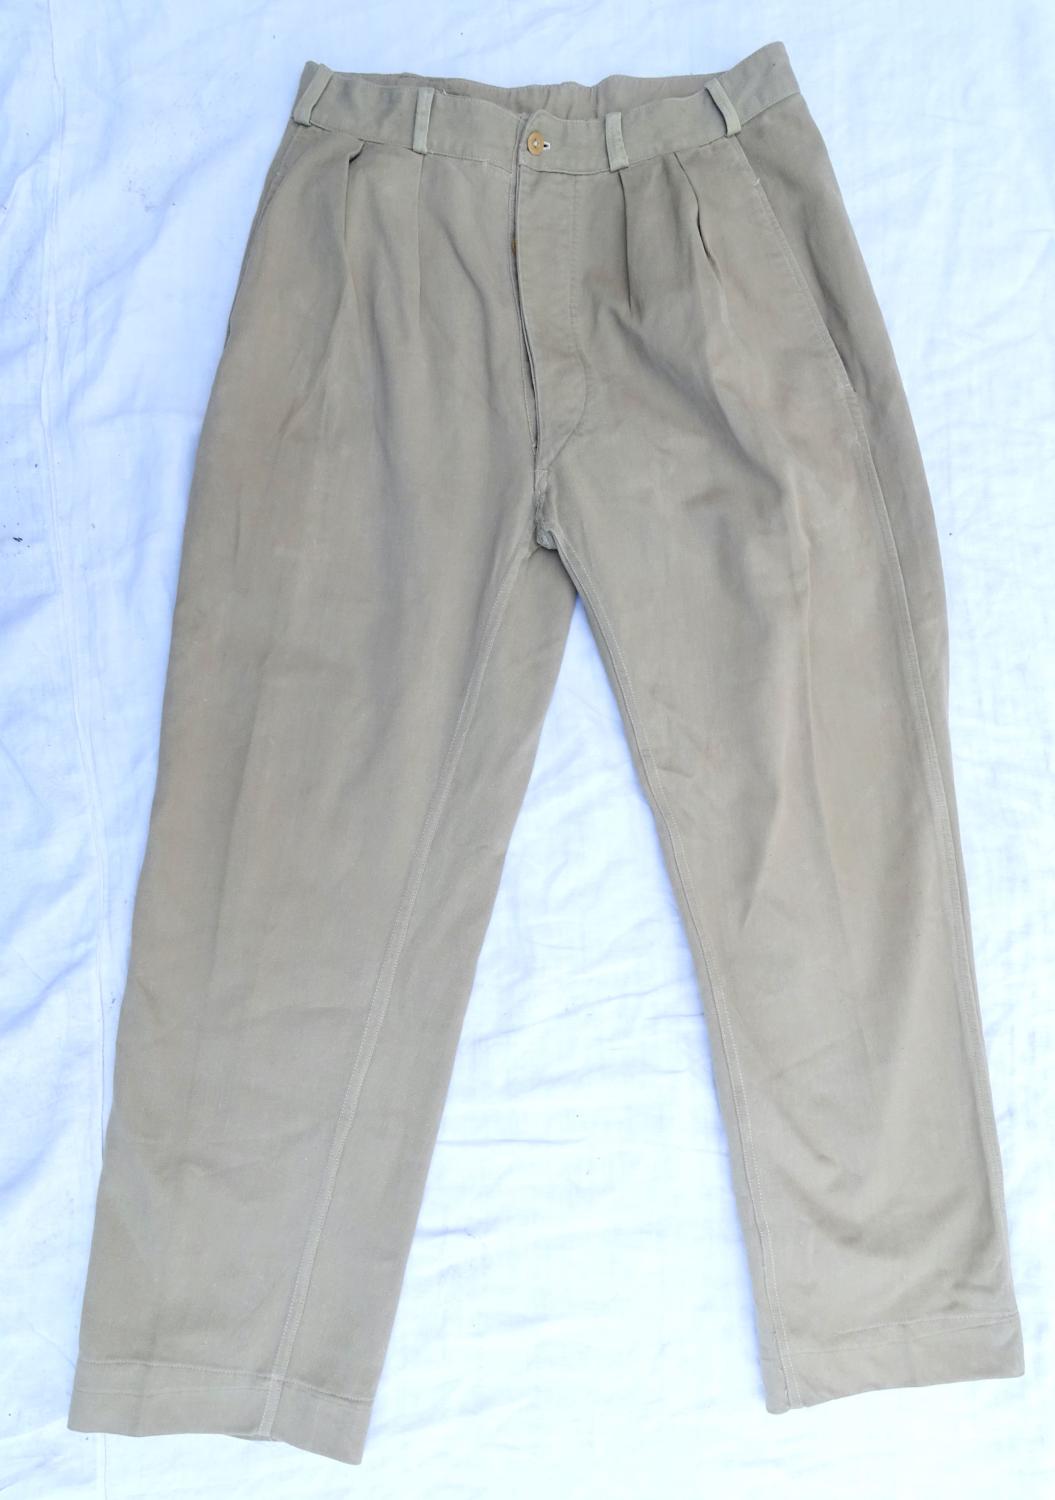 Pantalon Mle 47 Chino Atelier Militaire de Coupe et de Confection des FTEO